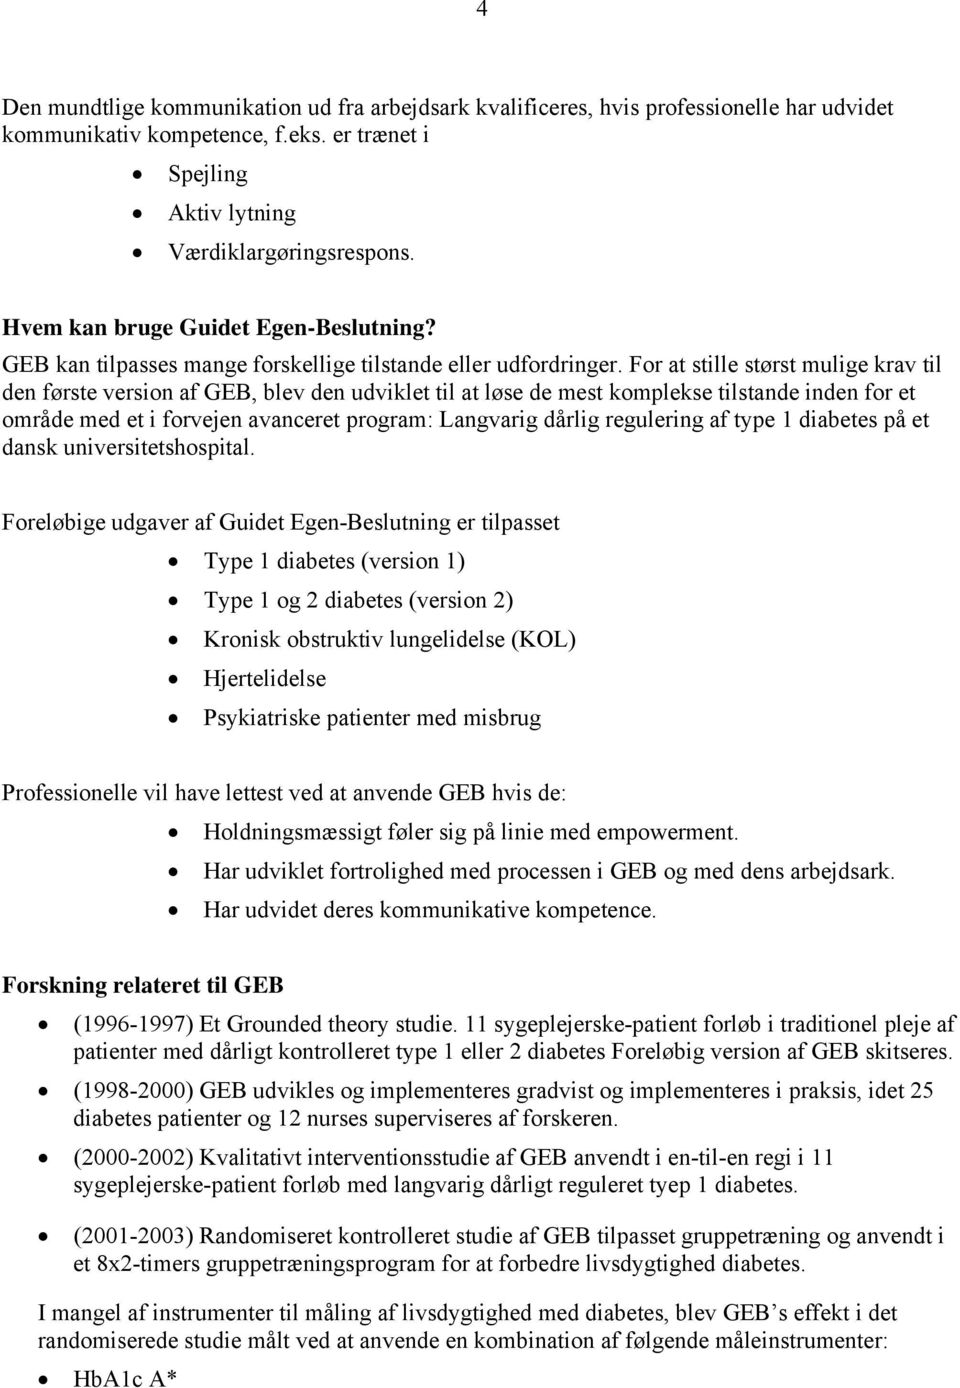 Kontrakt Ombord Demontere Guidet Egen-Beslutning. Vibeke Zoffmann - PDF Free Download